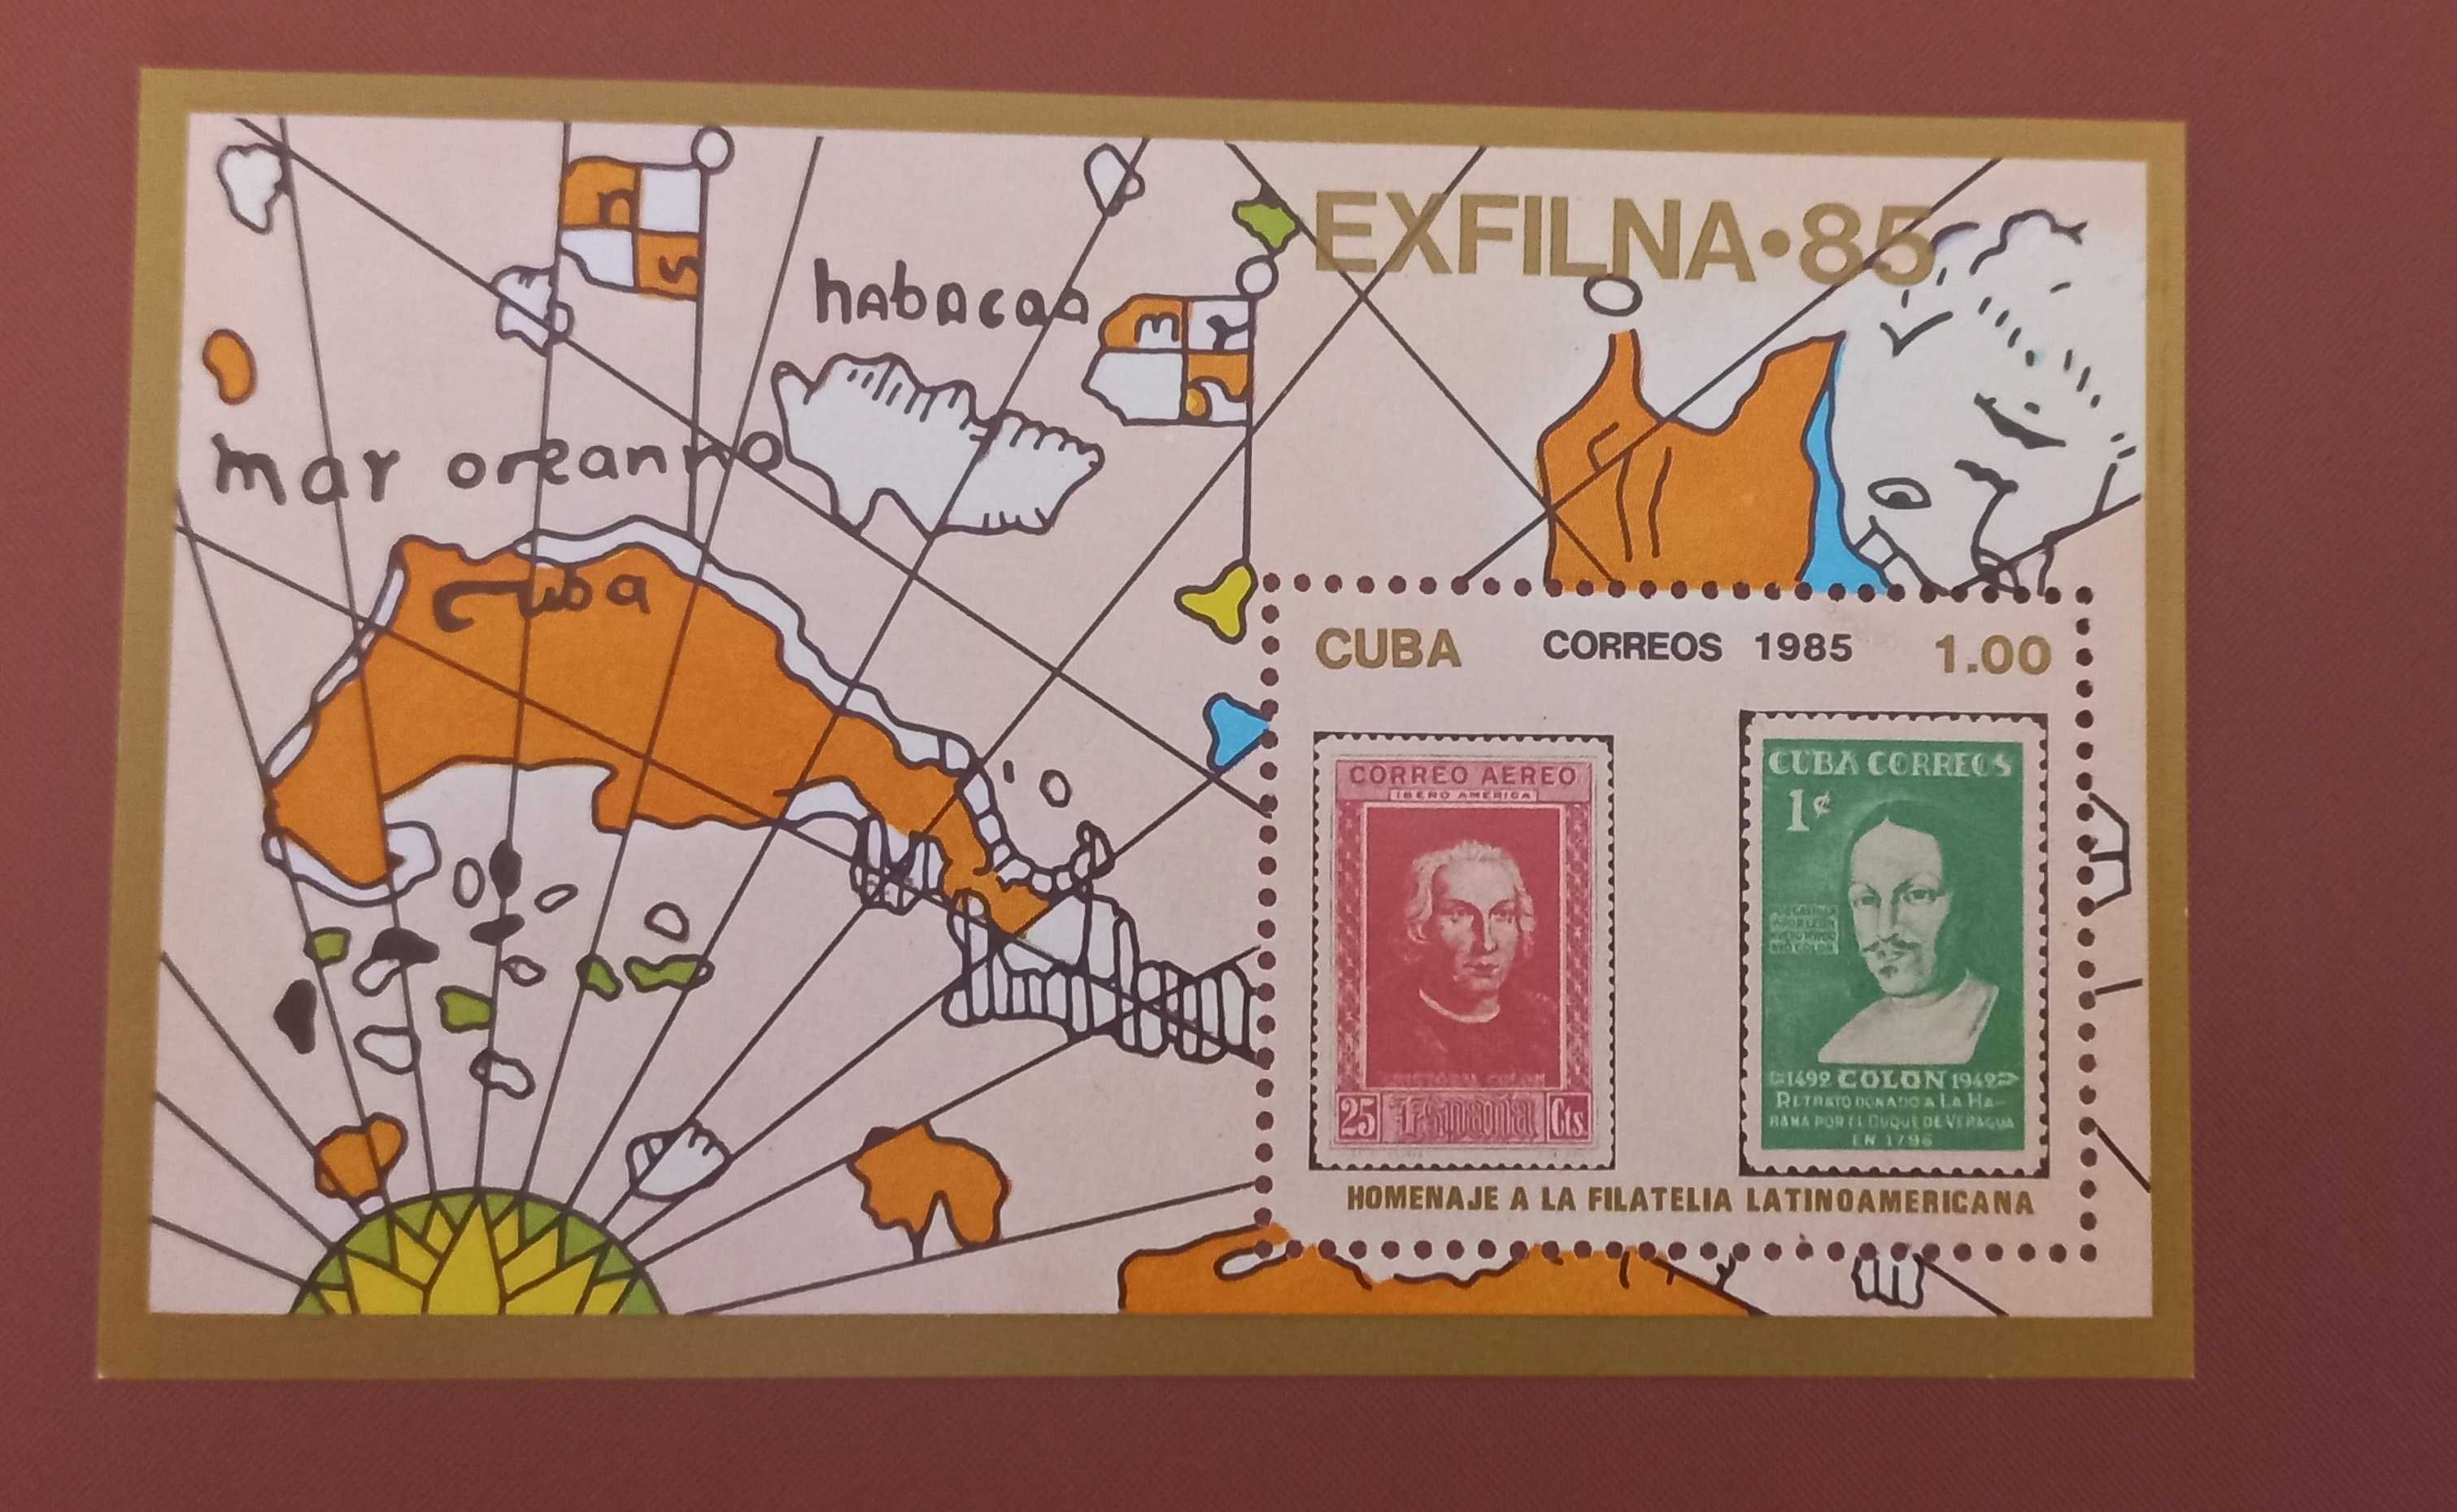 Znaczek pocztowy - Mapa- Kuba - znaczek w znaczku